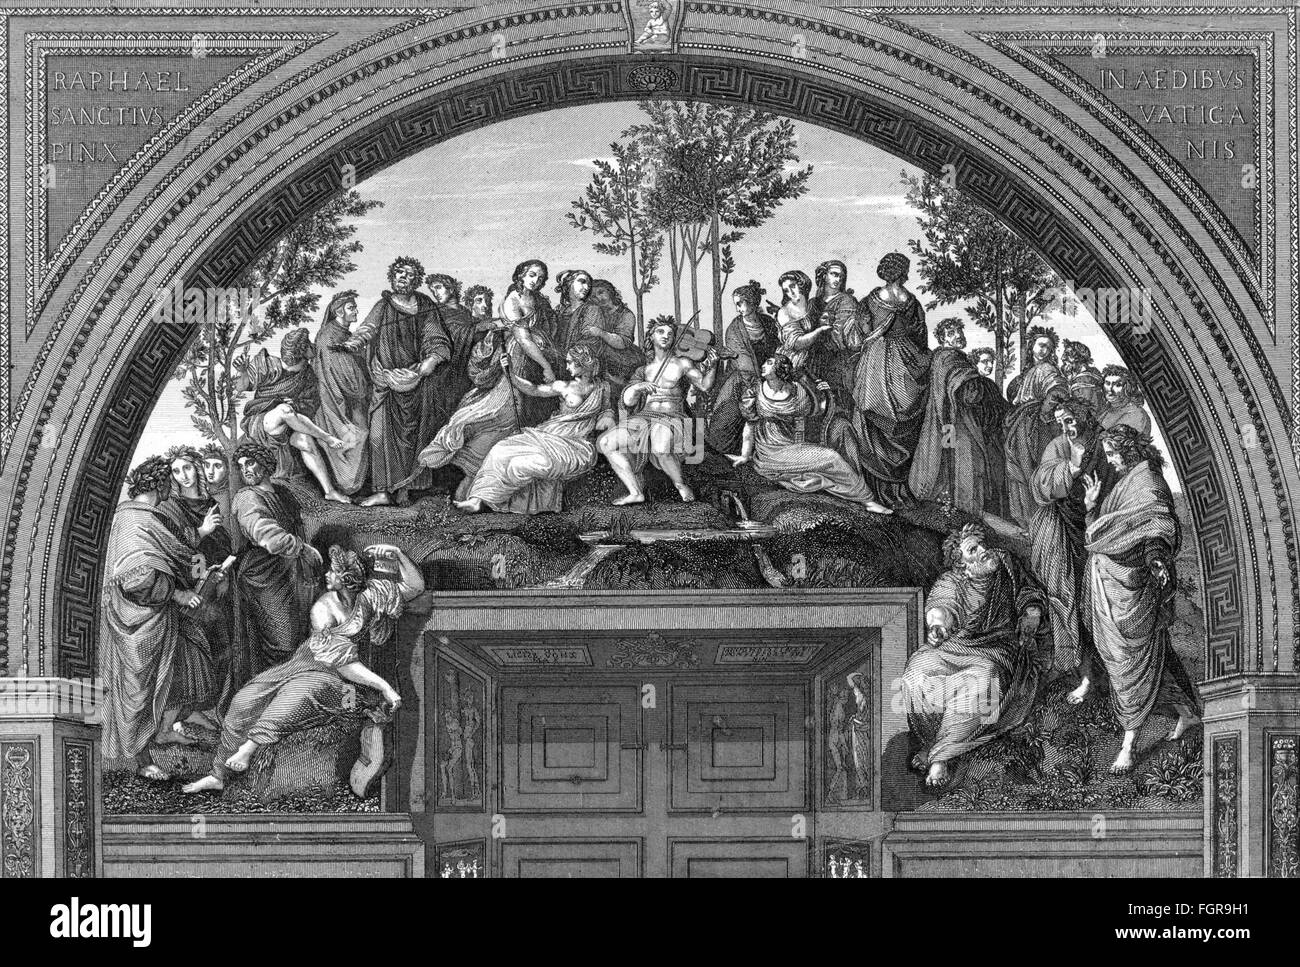 Littérature, allégories, 'Mount Parnassus', après peinture de Raphaël (1483 - 1520), gravure en bois de A.C.Payne, 19e siècle, droits additionnels-Clearences-non disponible Banque D'Images